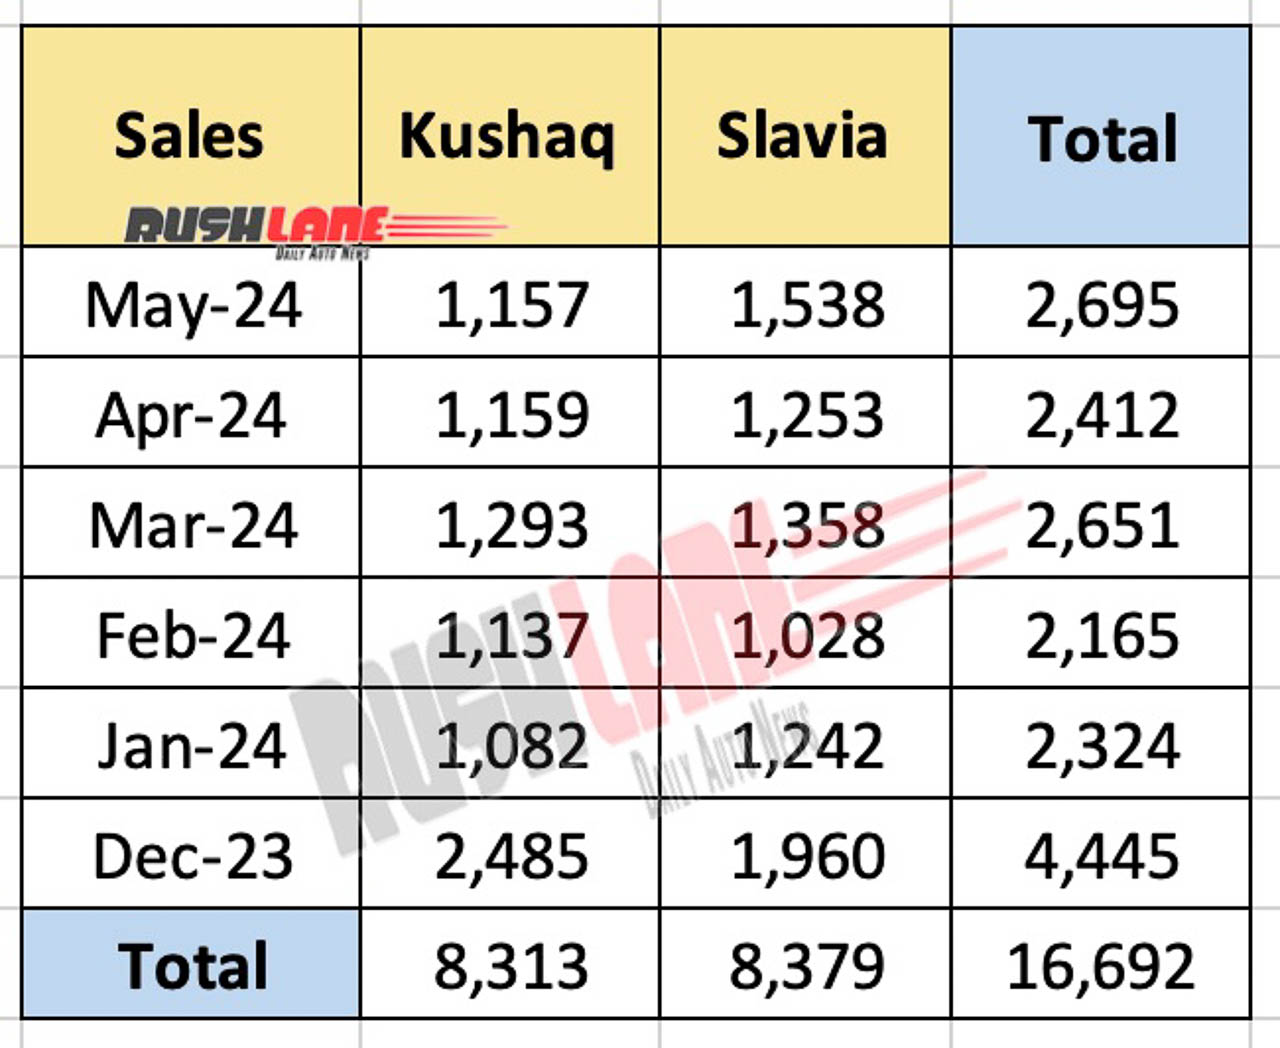 Skoda Kushaq and Slavia - Last 6 month sales